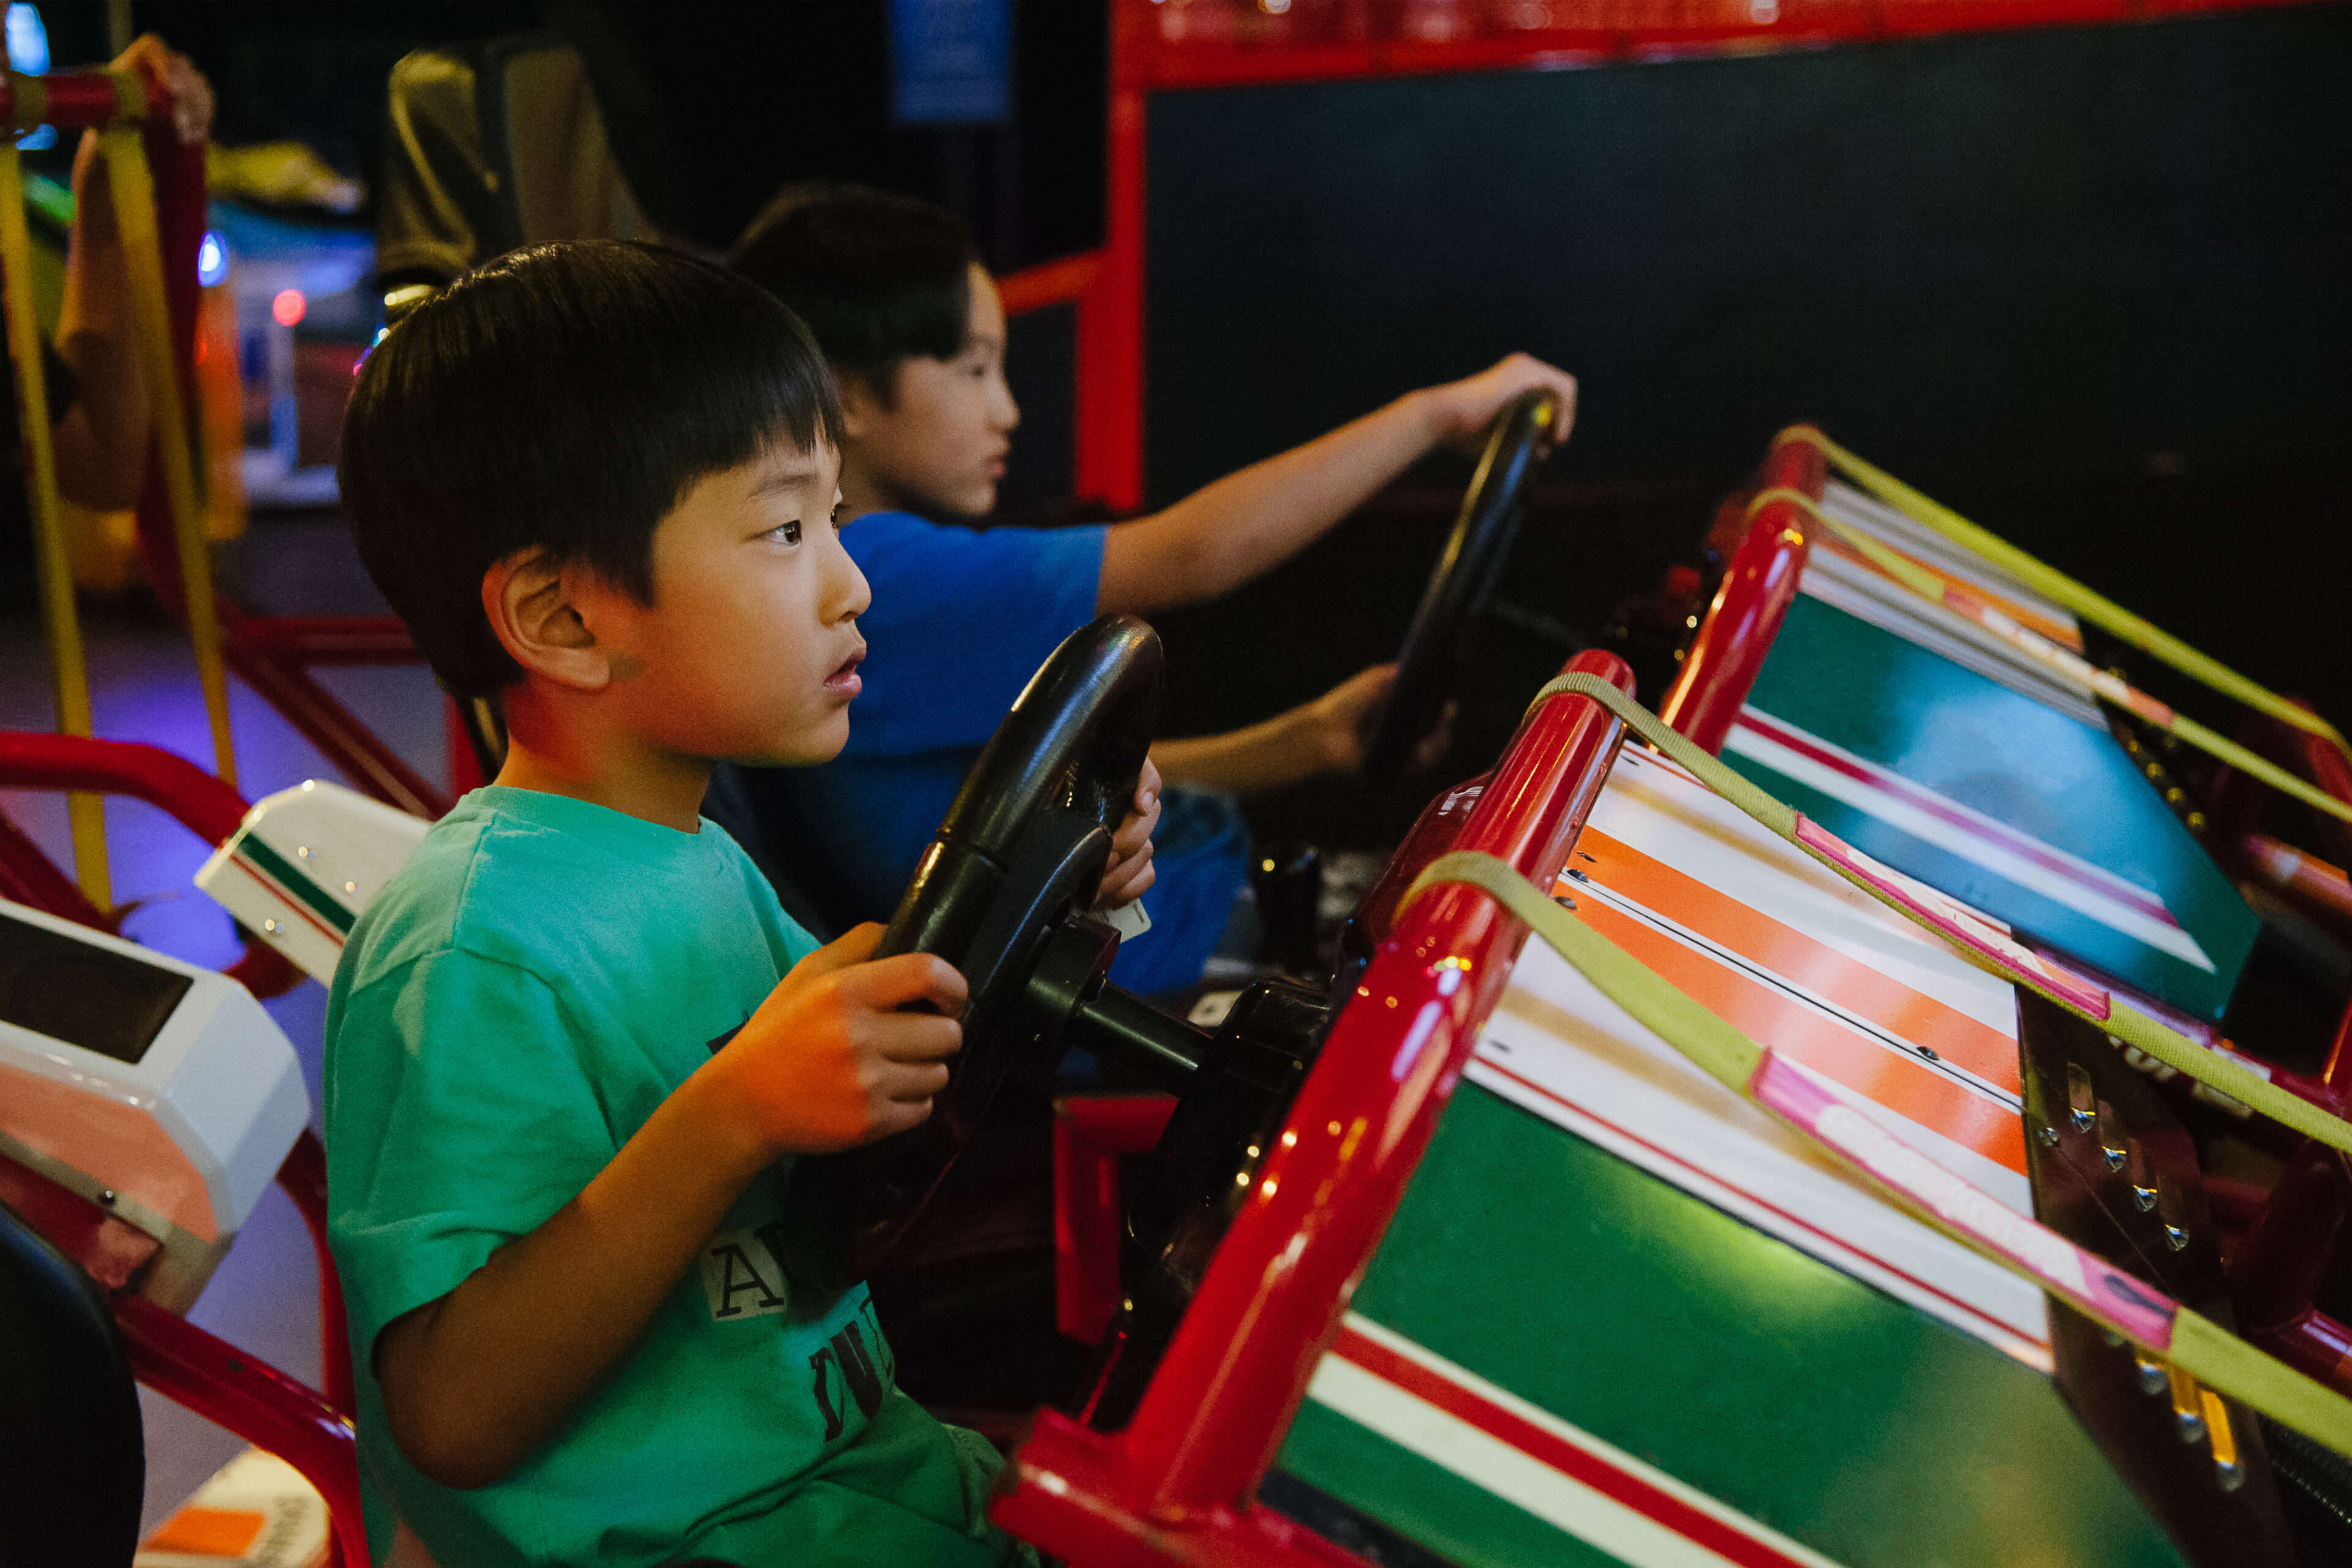 Children gaming in an arcade